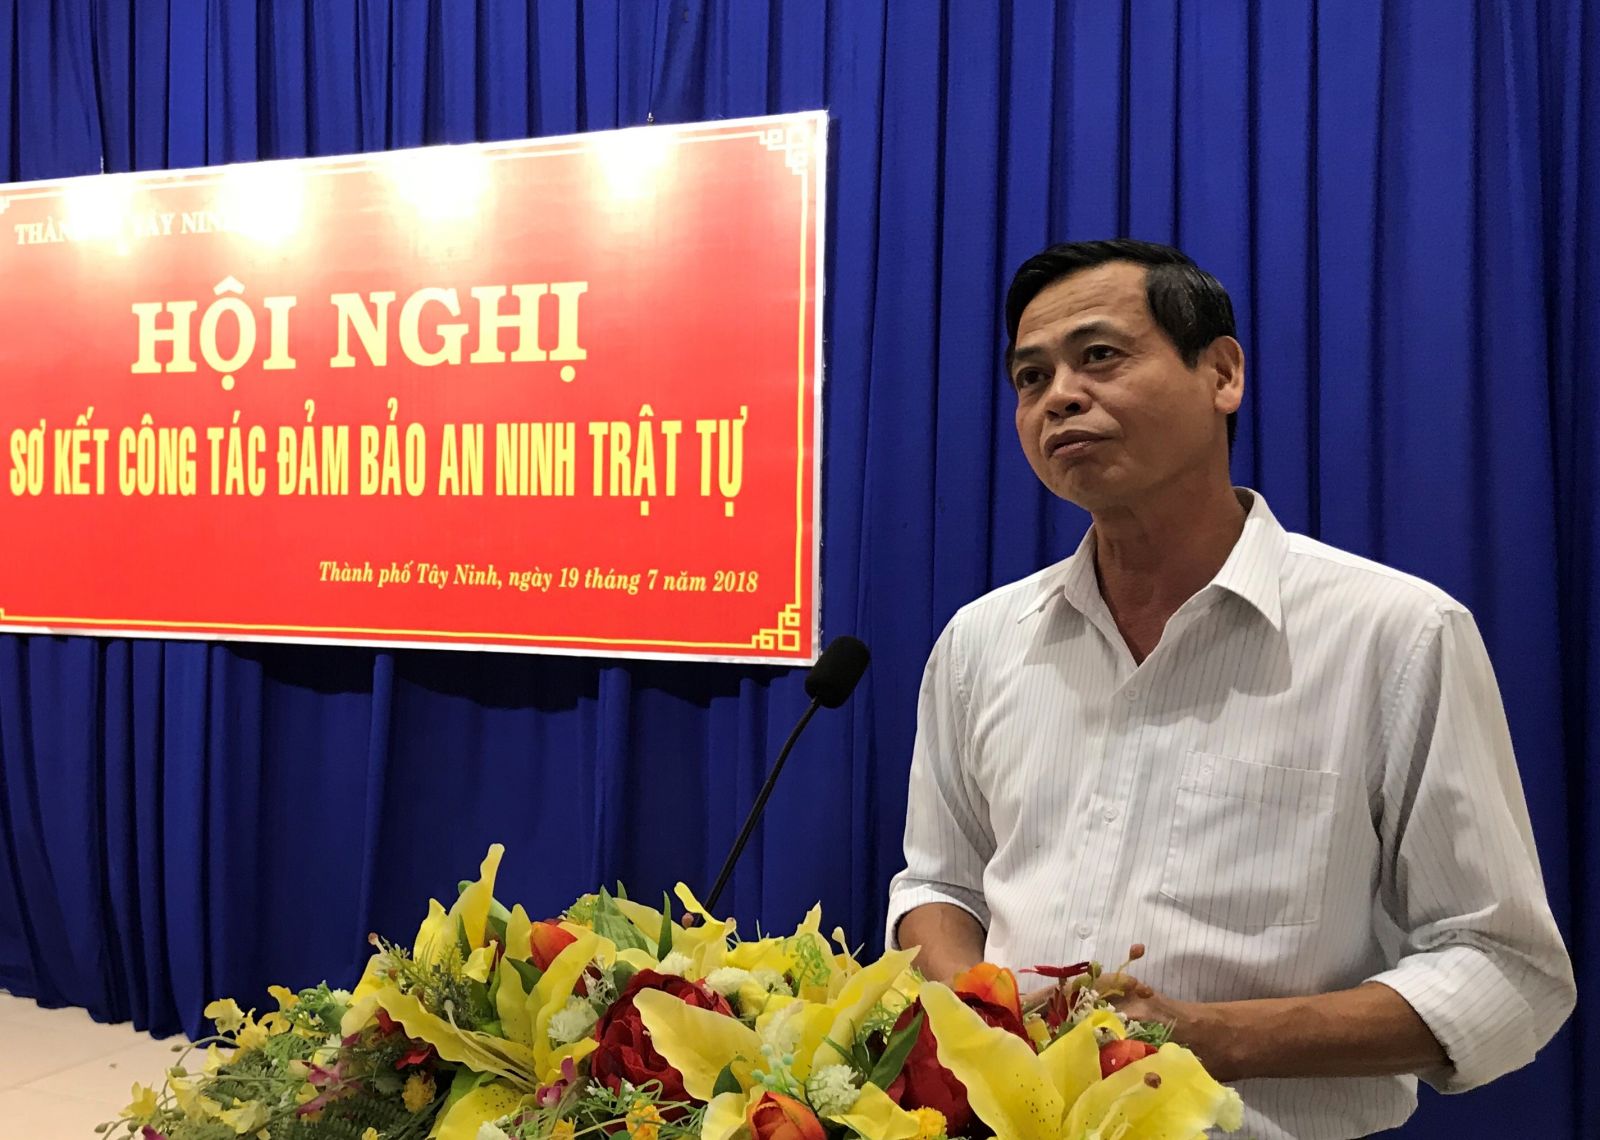 Điểm báo in Tây Ninh ngày 25.7.2018